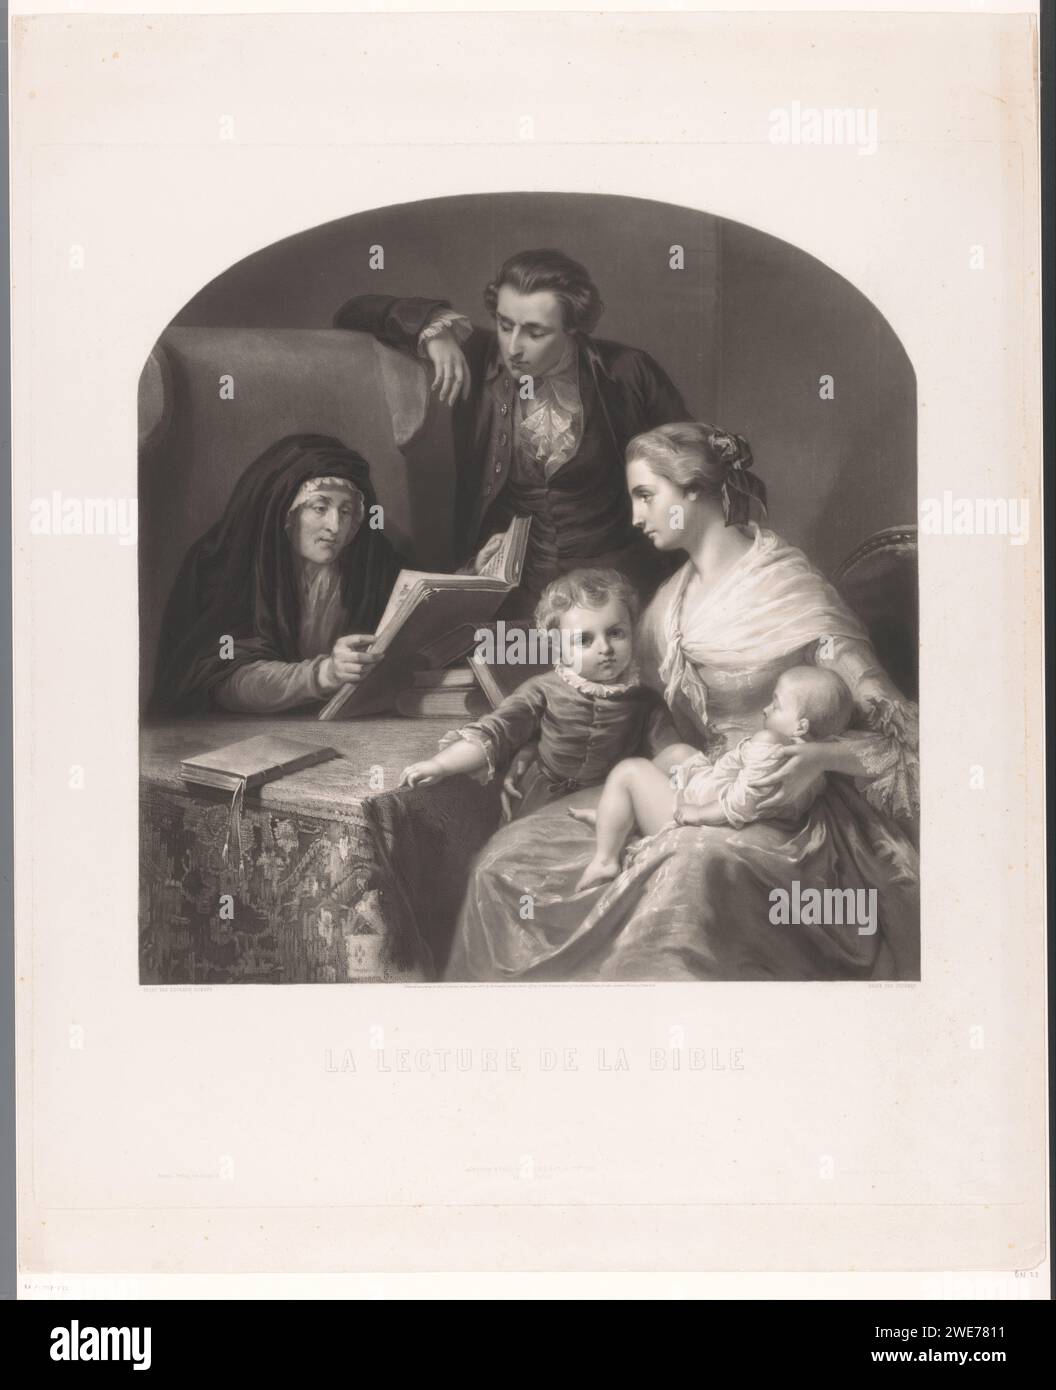 Famille sur l'étude biblique, Auguste Adrien Jouanin, d'après Edouard Dubufe, 1855 imprimer Paris gravure sur papier / gravure lisant la Bible ou d'autres livres religieux. la vie familiale à la maison Banque D'Images